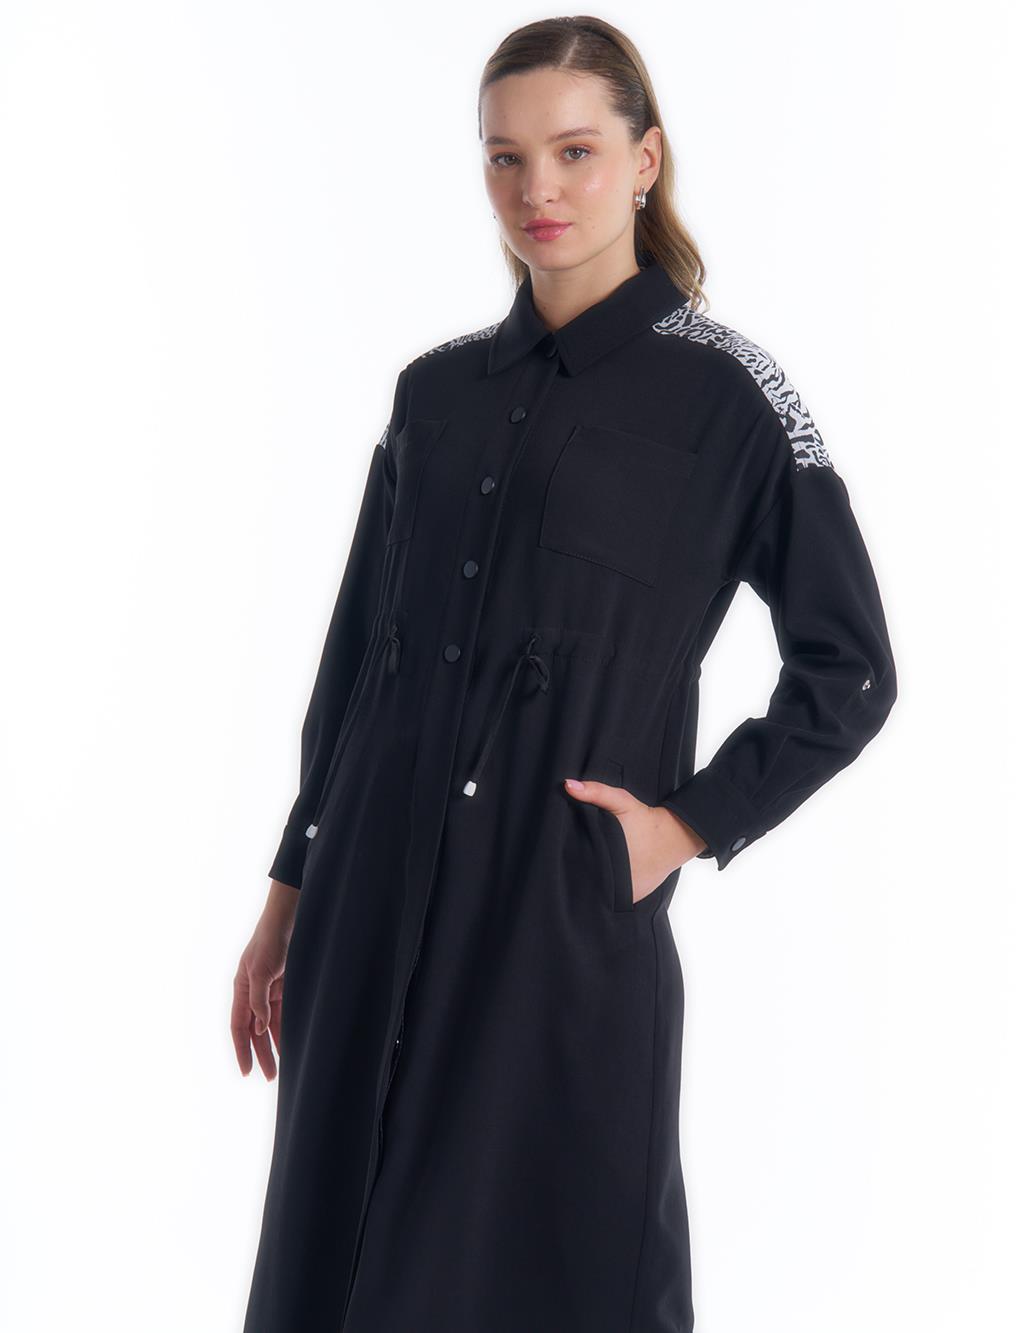 Waist Adjustable Pocket Dress Black